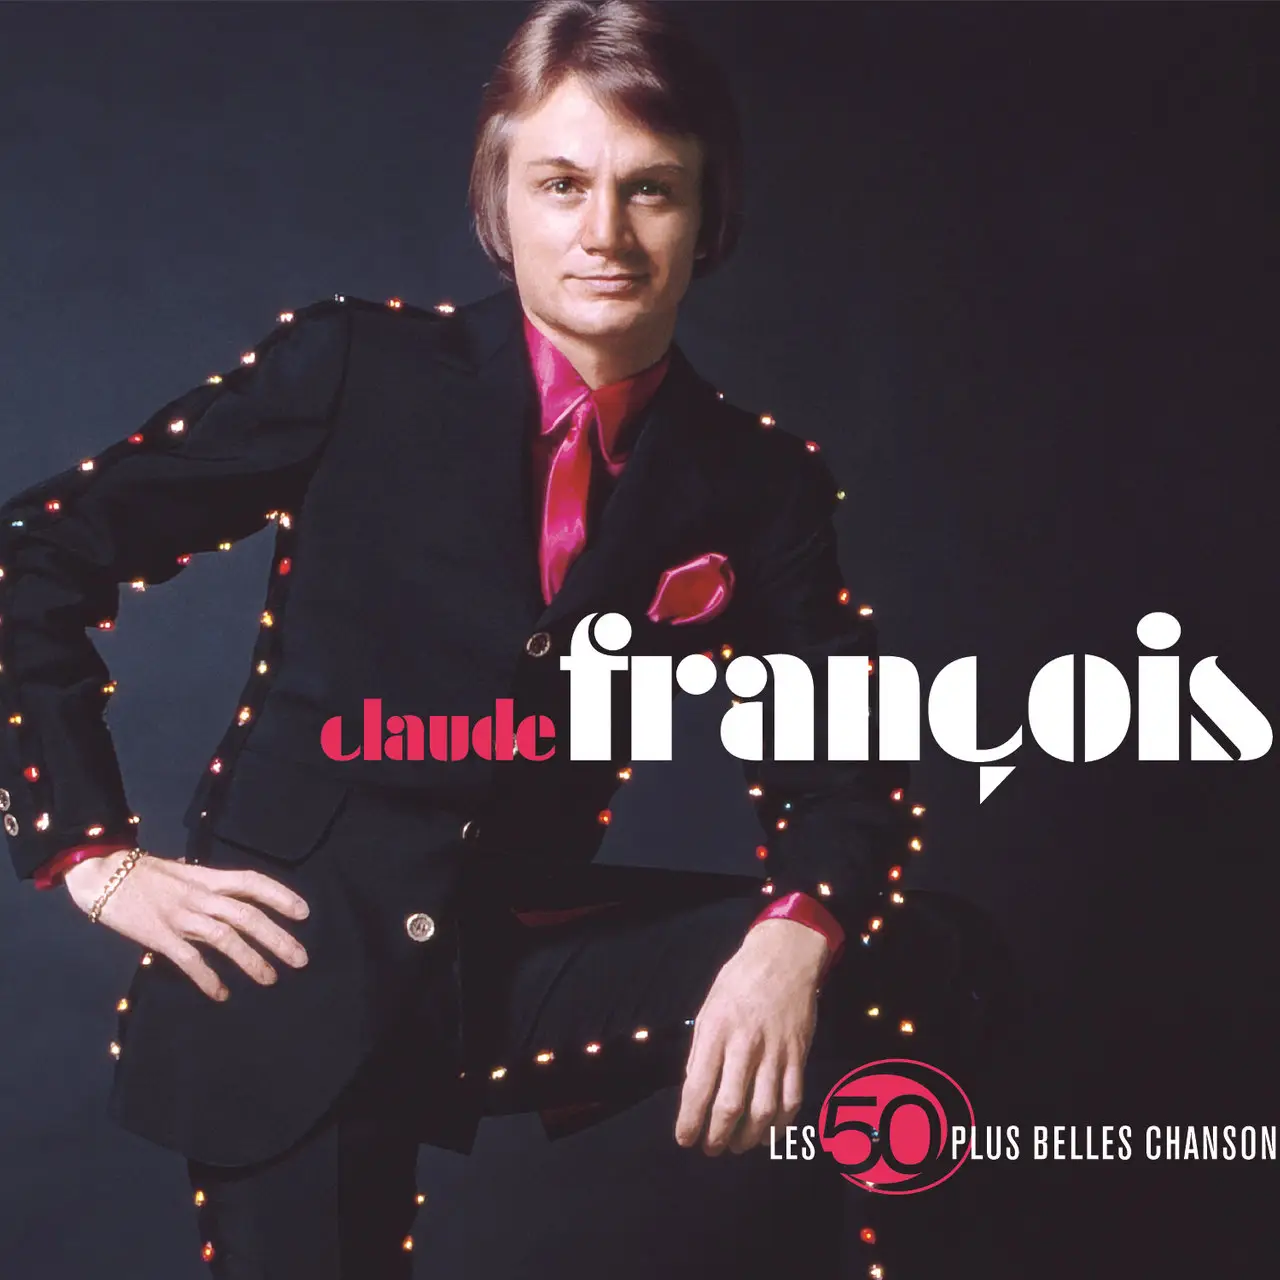 Claude François - Les 50 Plus Belles Chansons (2007) / AvaxHome